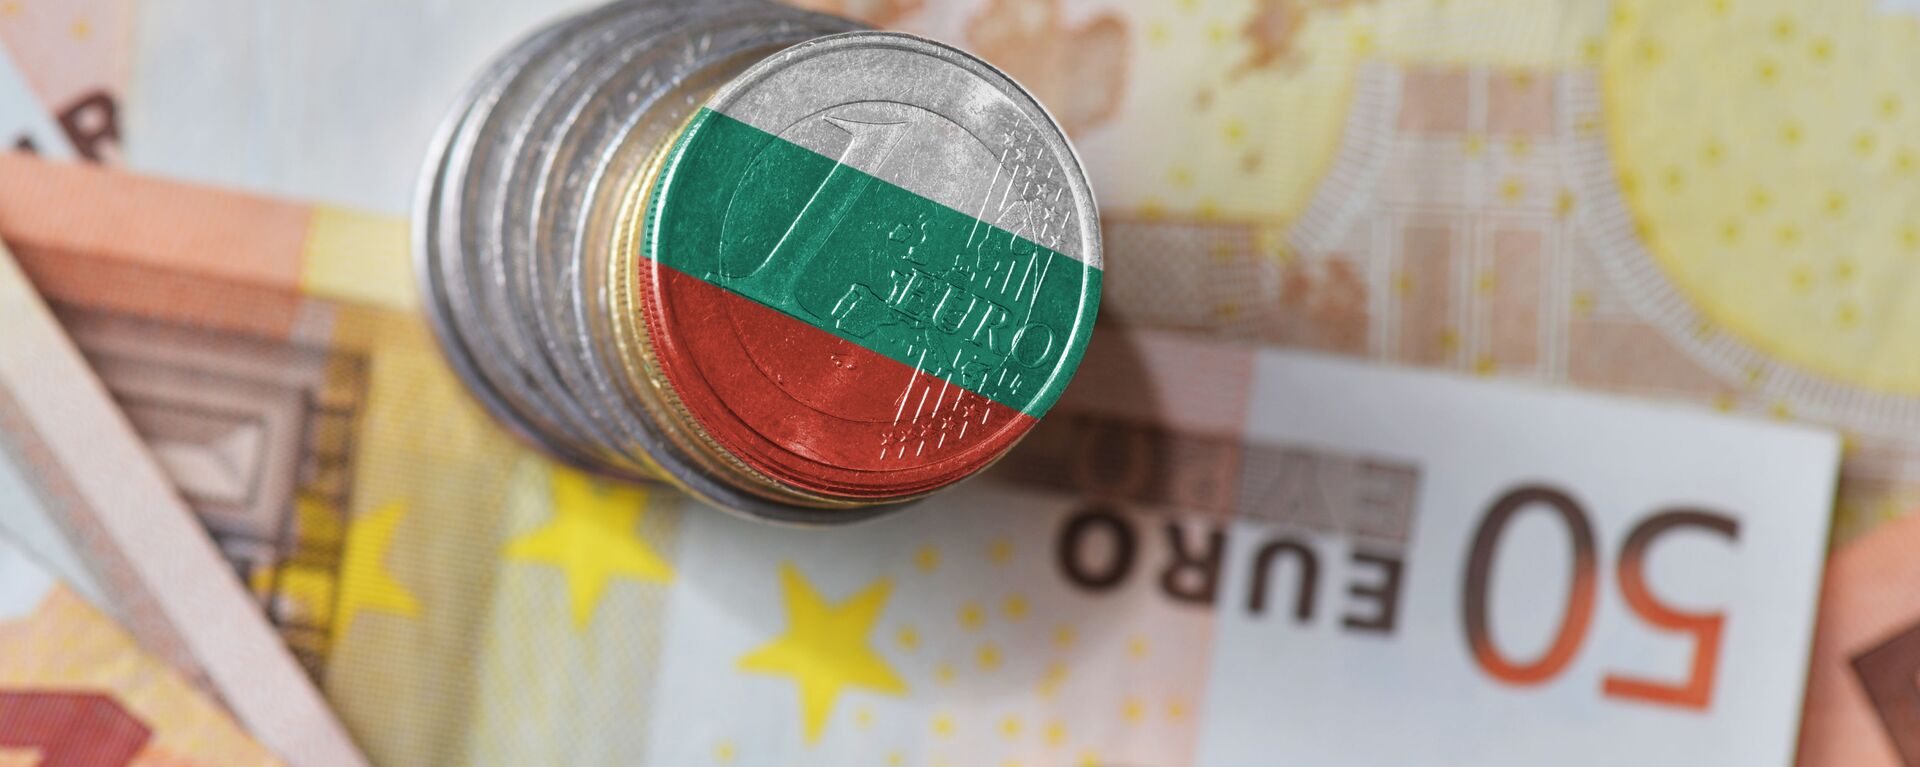 Evro u boji bugarske zastave - Sputnik Srbija, 1920, 05.07.2021